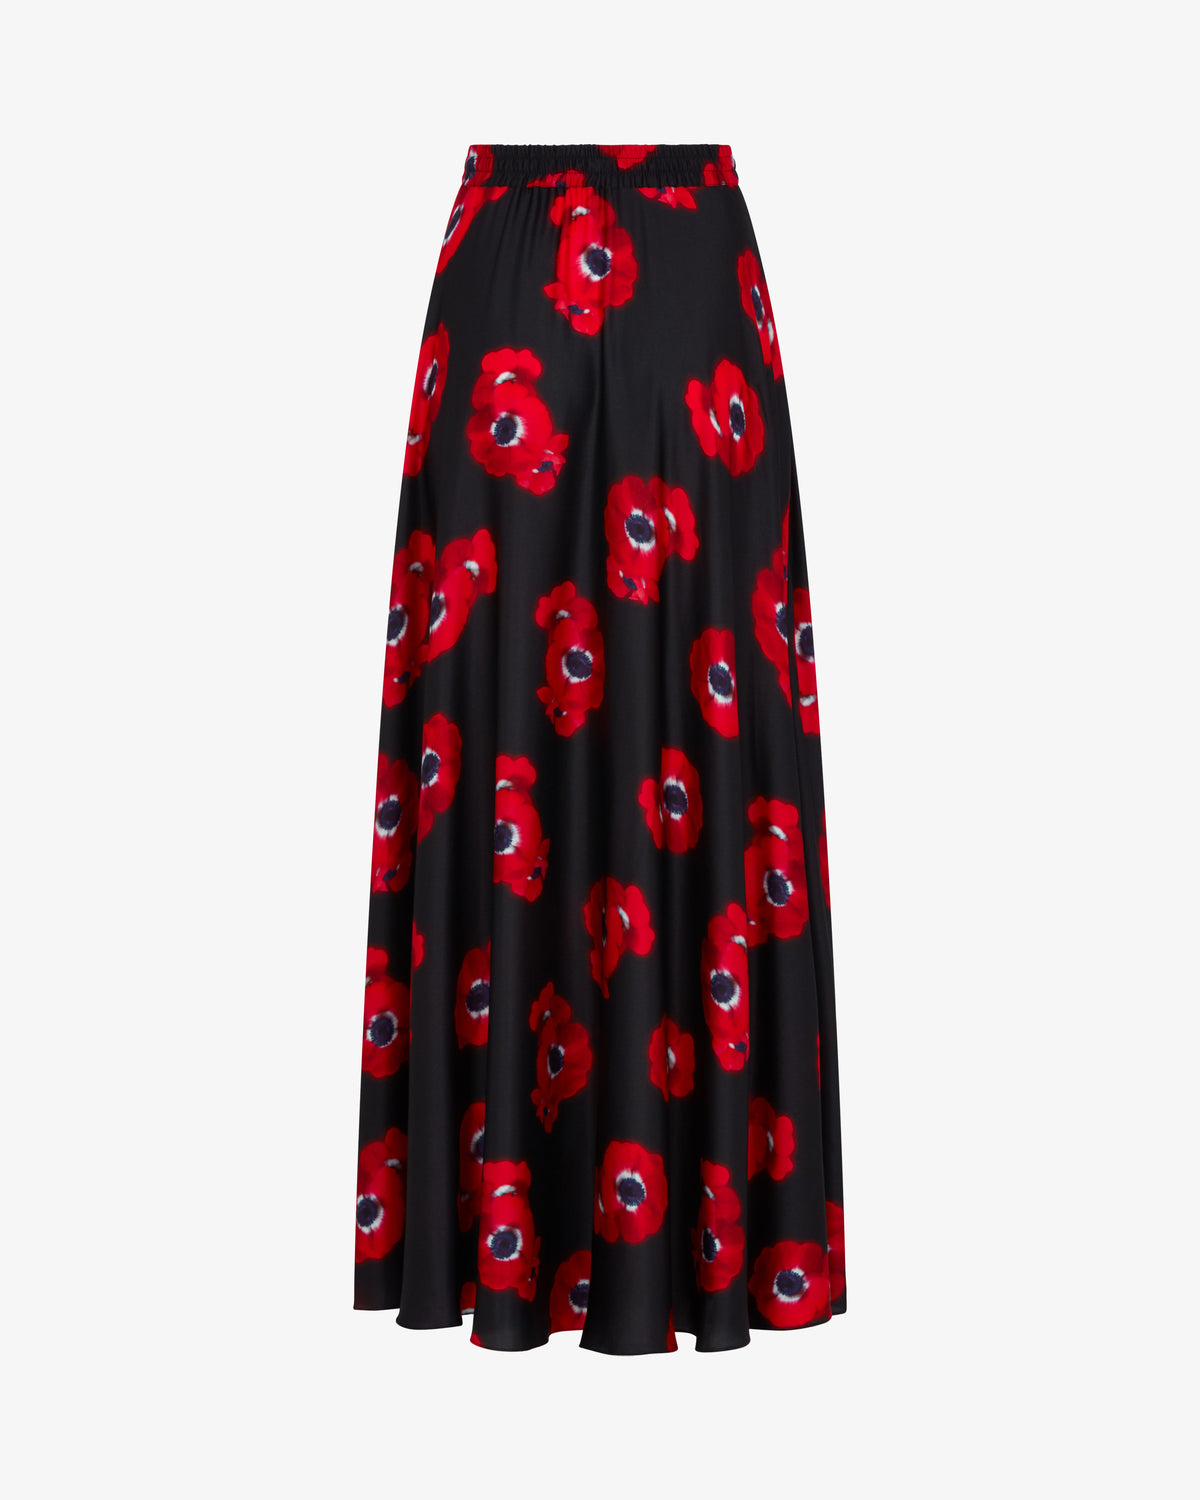 Graphic Poppy Full Maxi Skirt - Black/Red